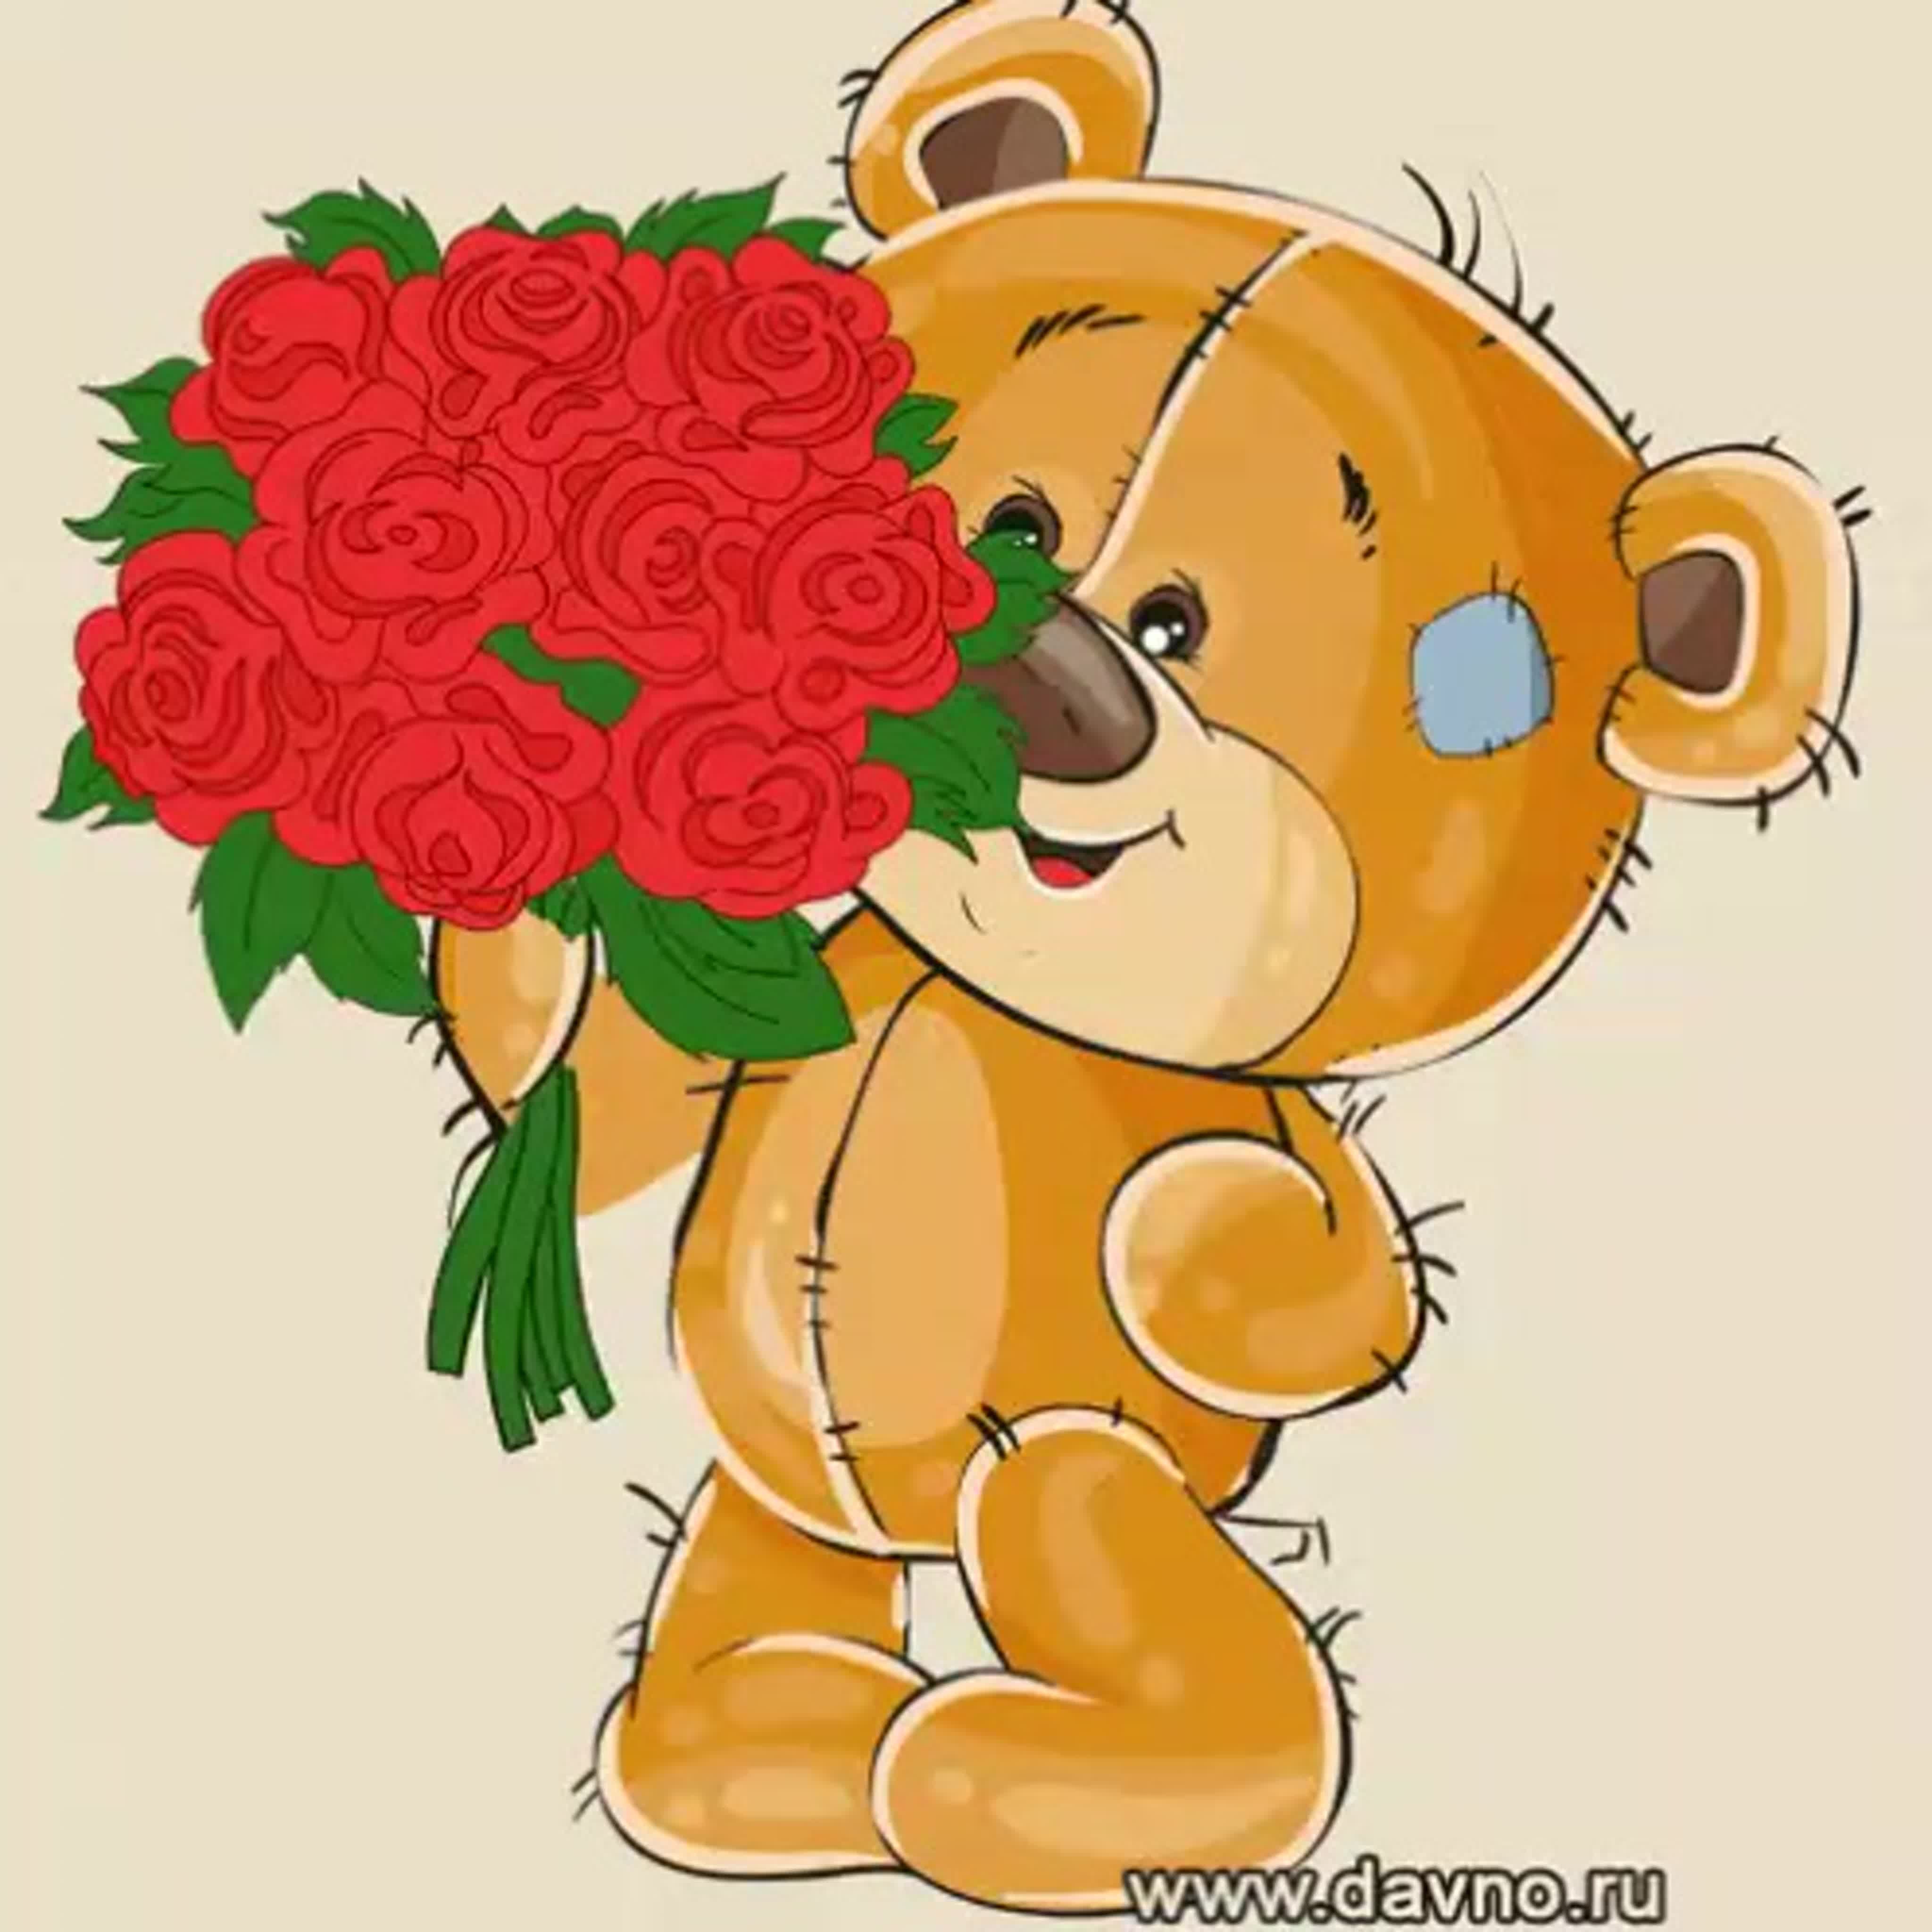 Медвежонок дарит цветочек